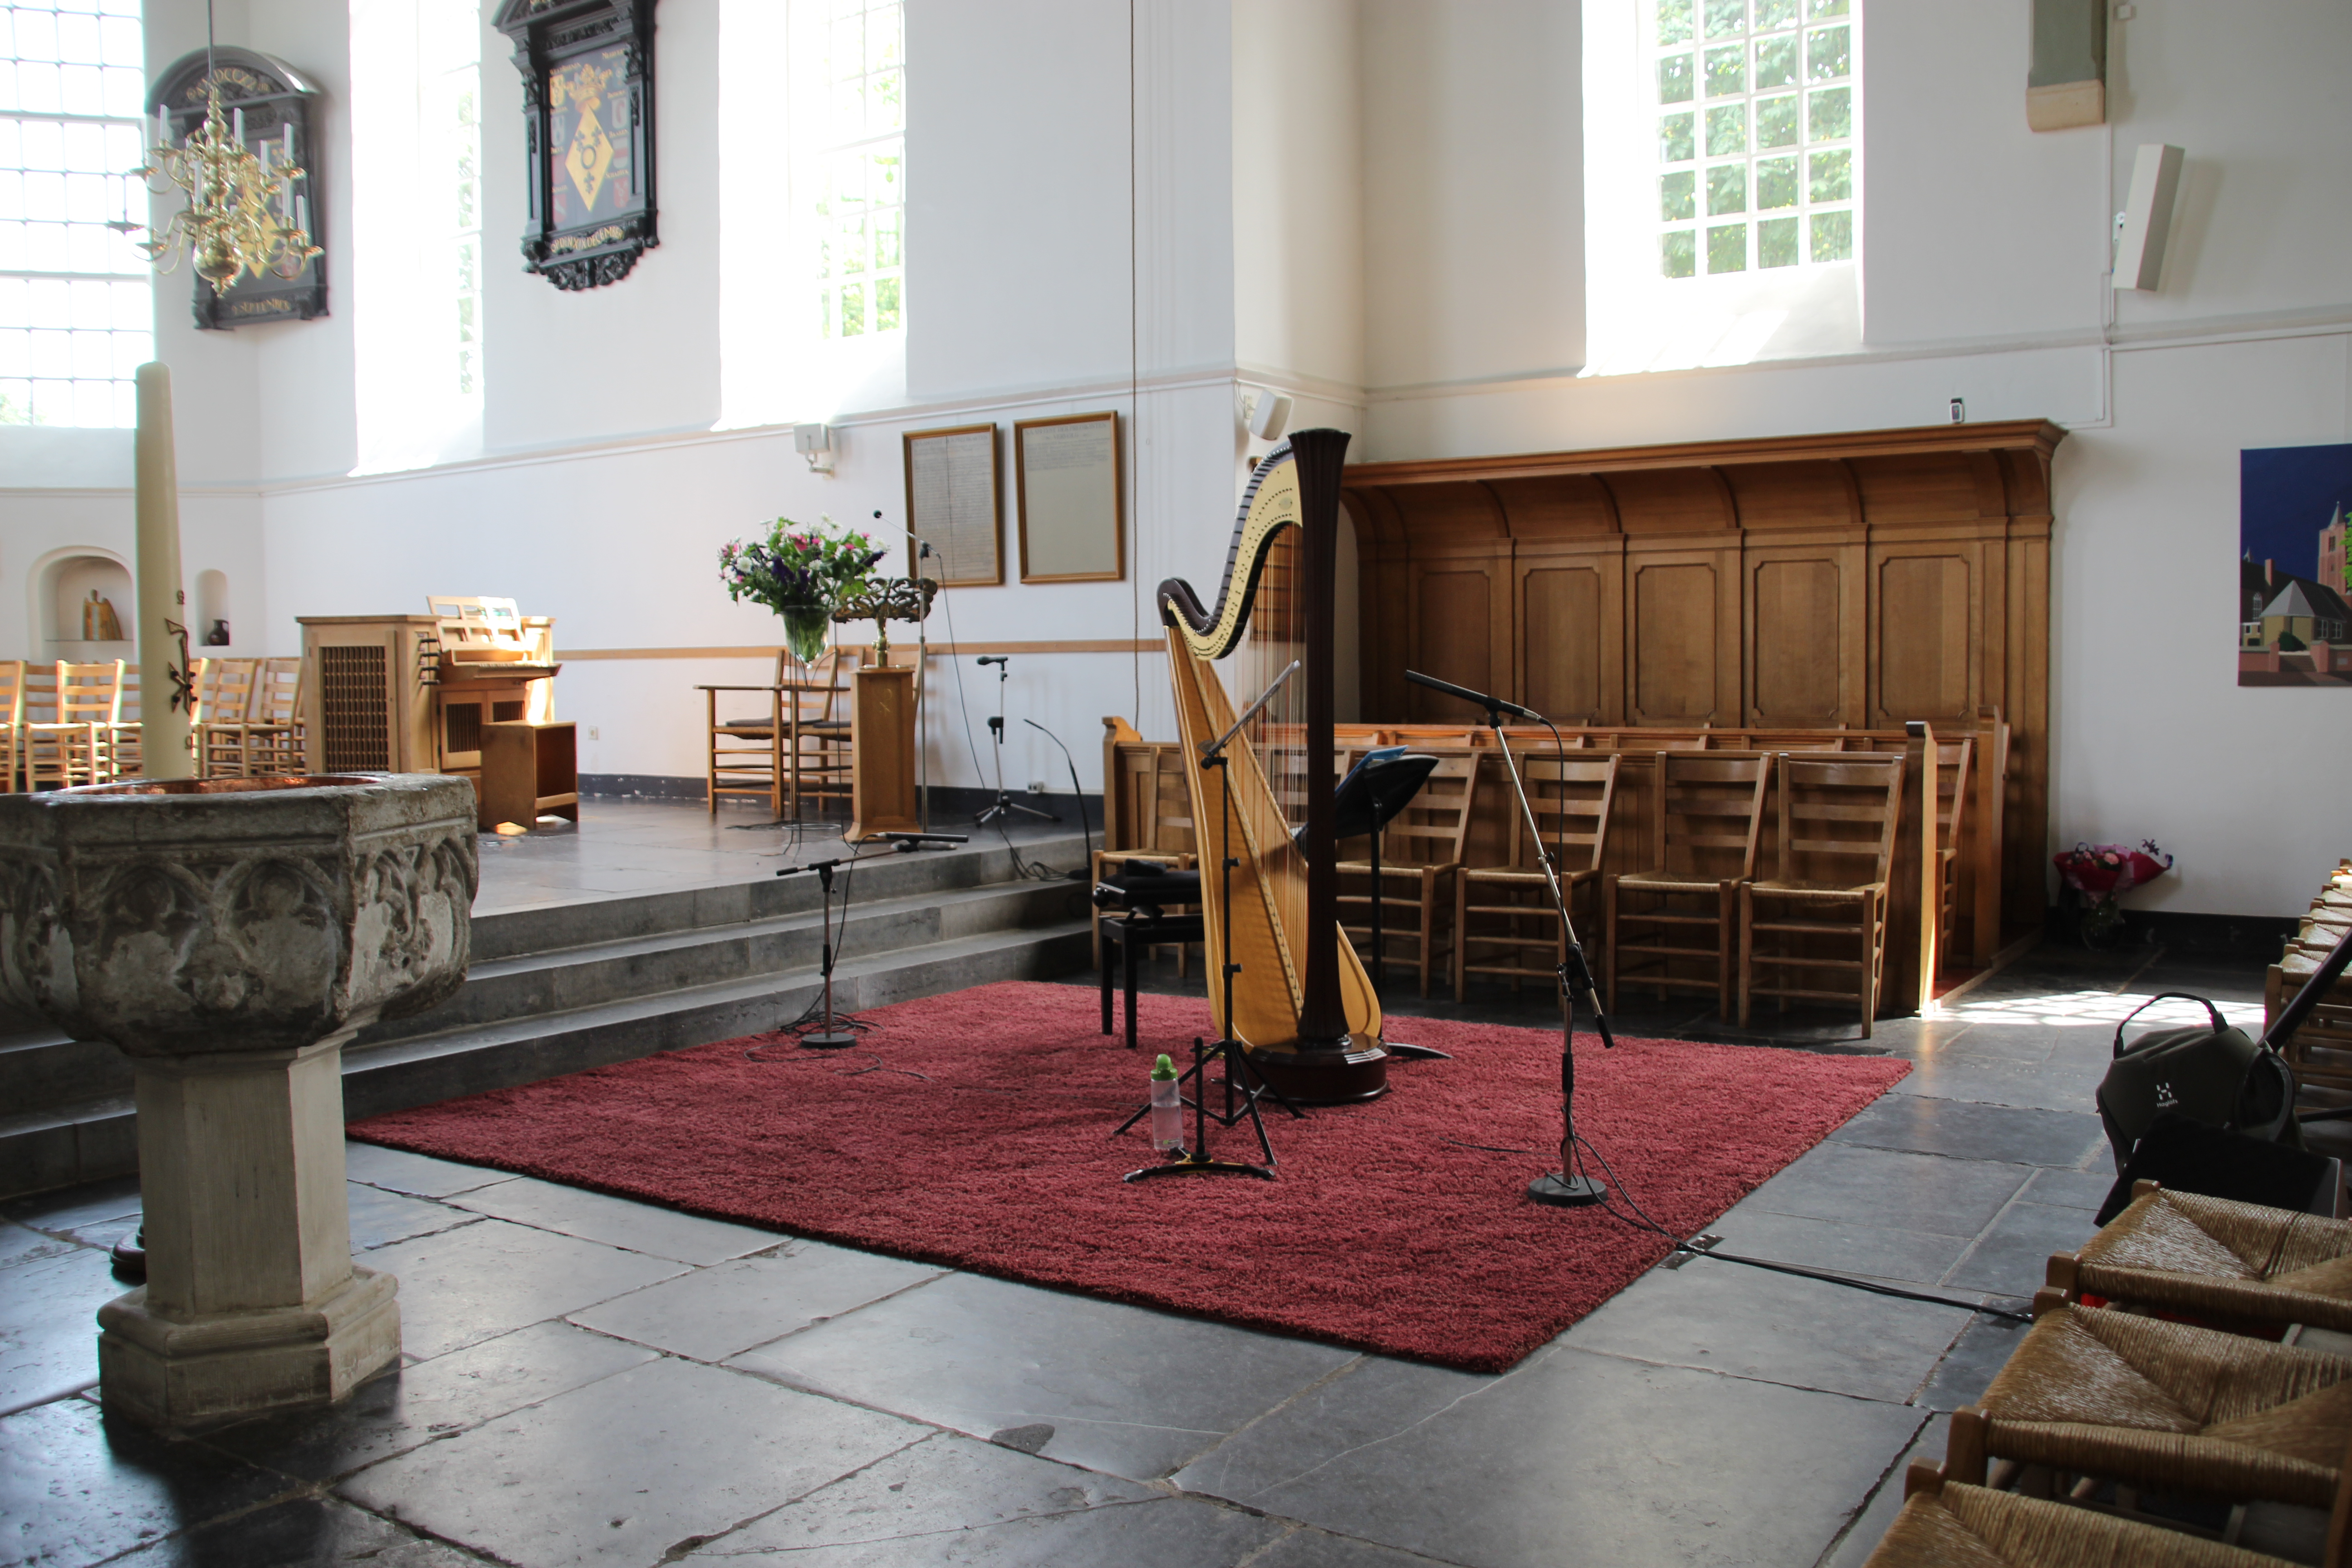 Muziekinstrumenten voor concert Oude Kerk Soest, 2018